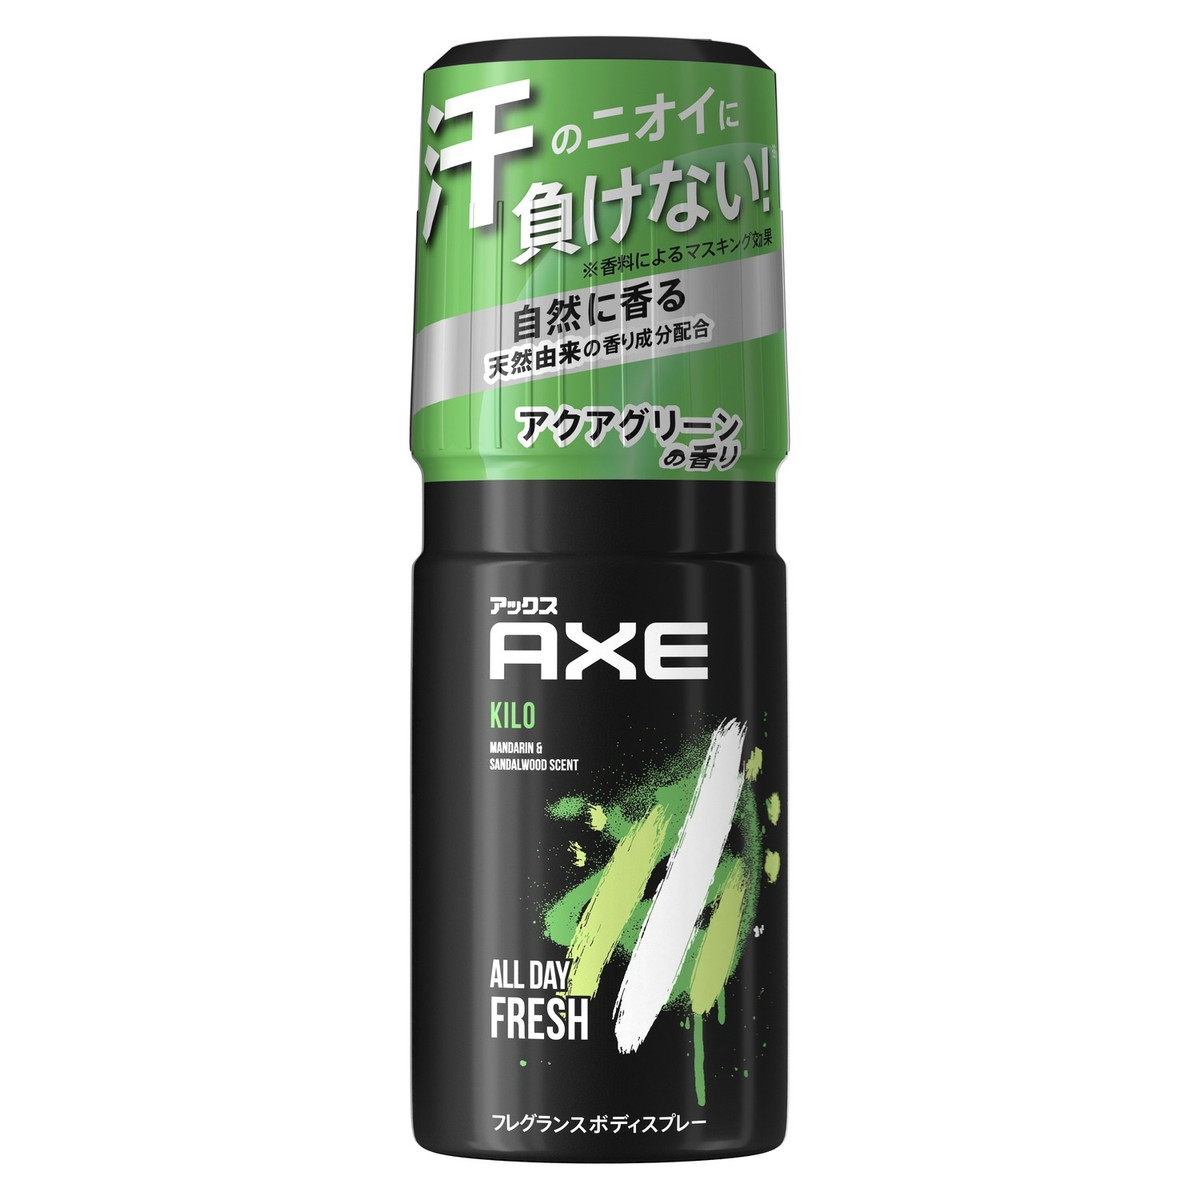 アックス ユニリーバ AXE アックス フレグランスボディスプレー キロ 60g 澄んだアクアグリーンの香り